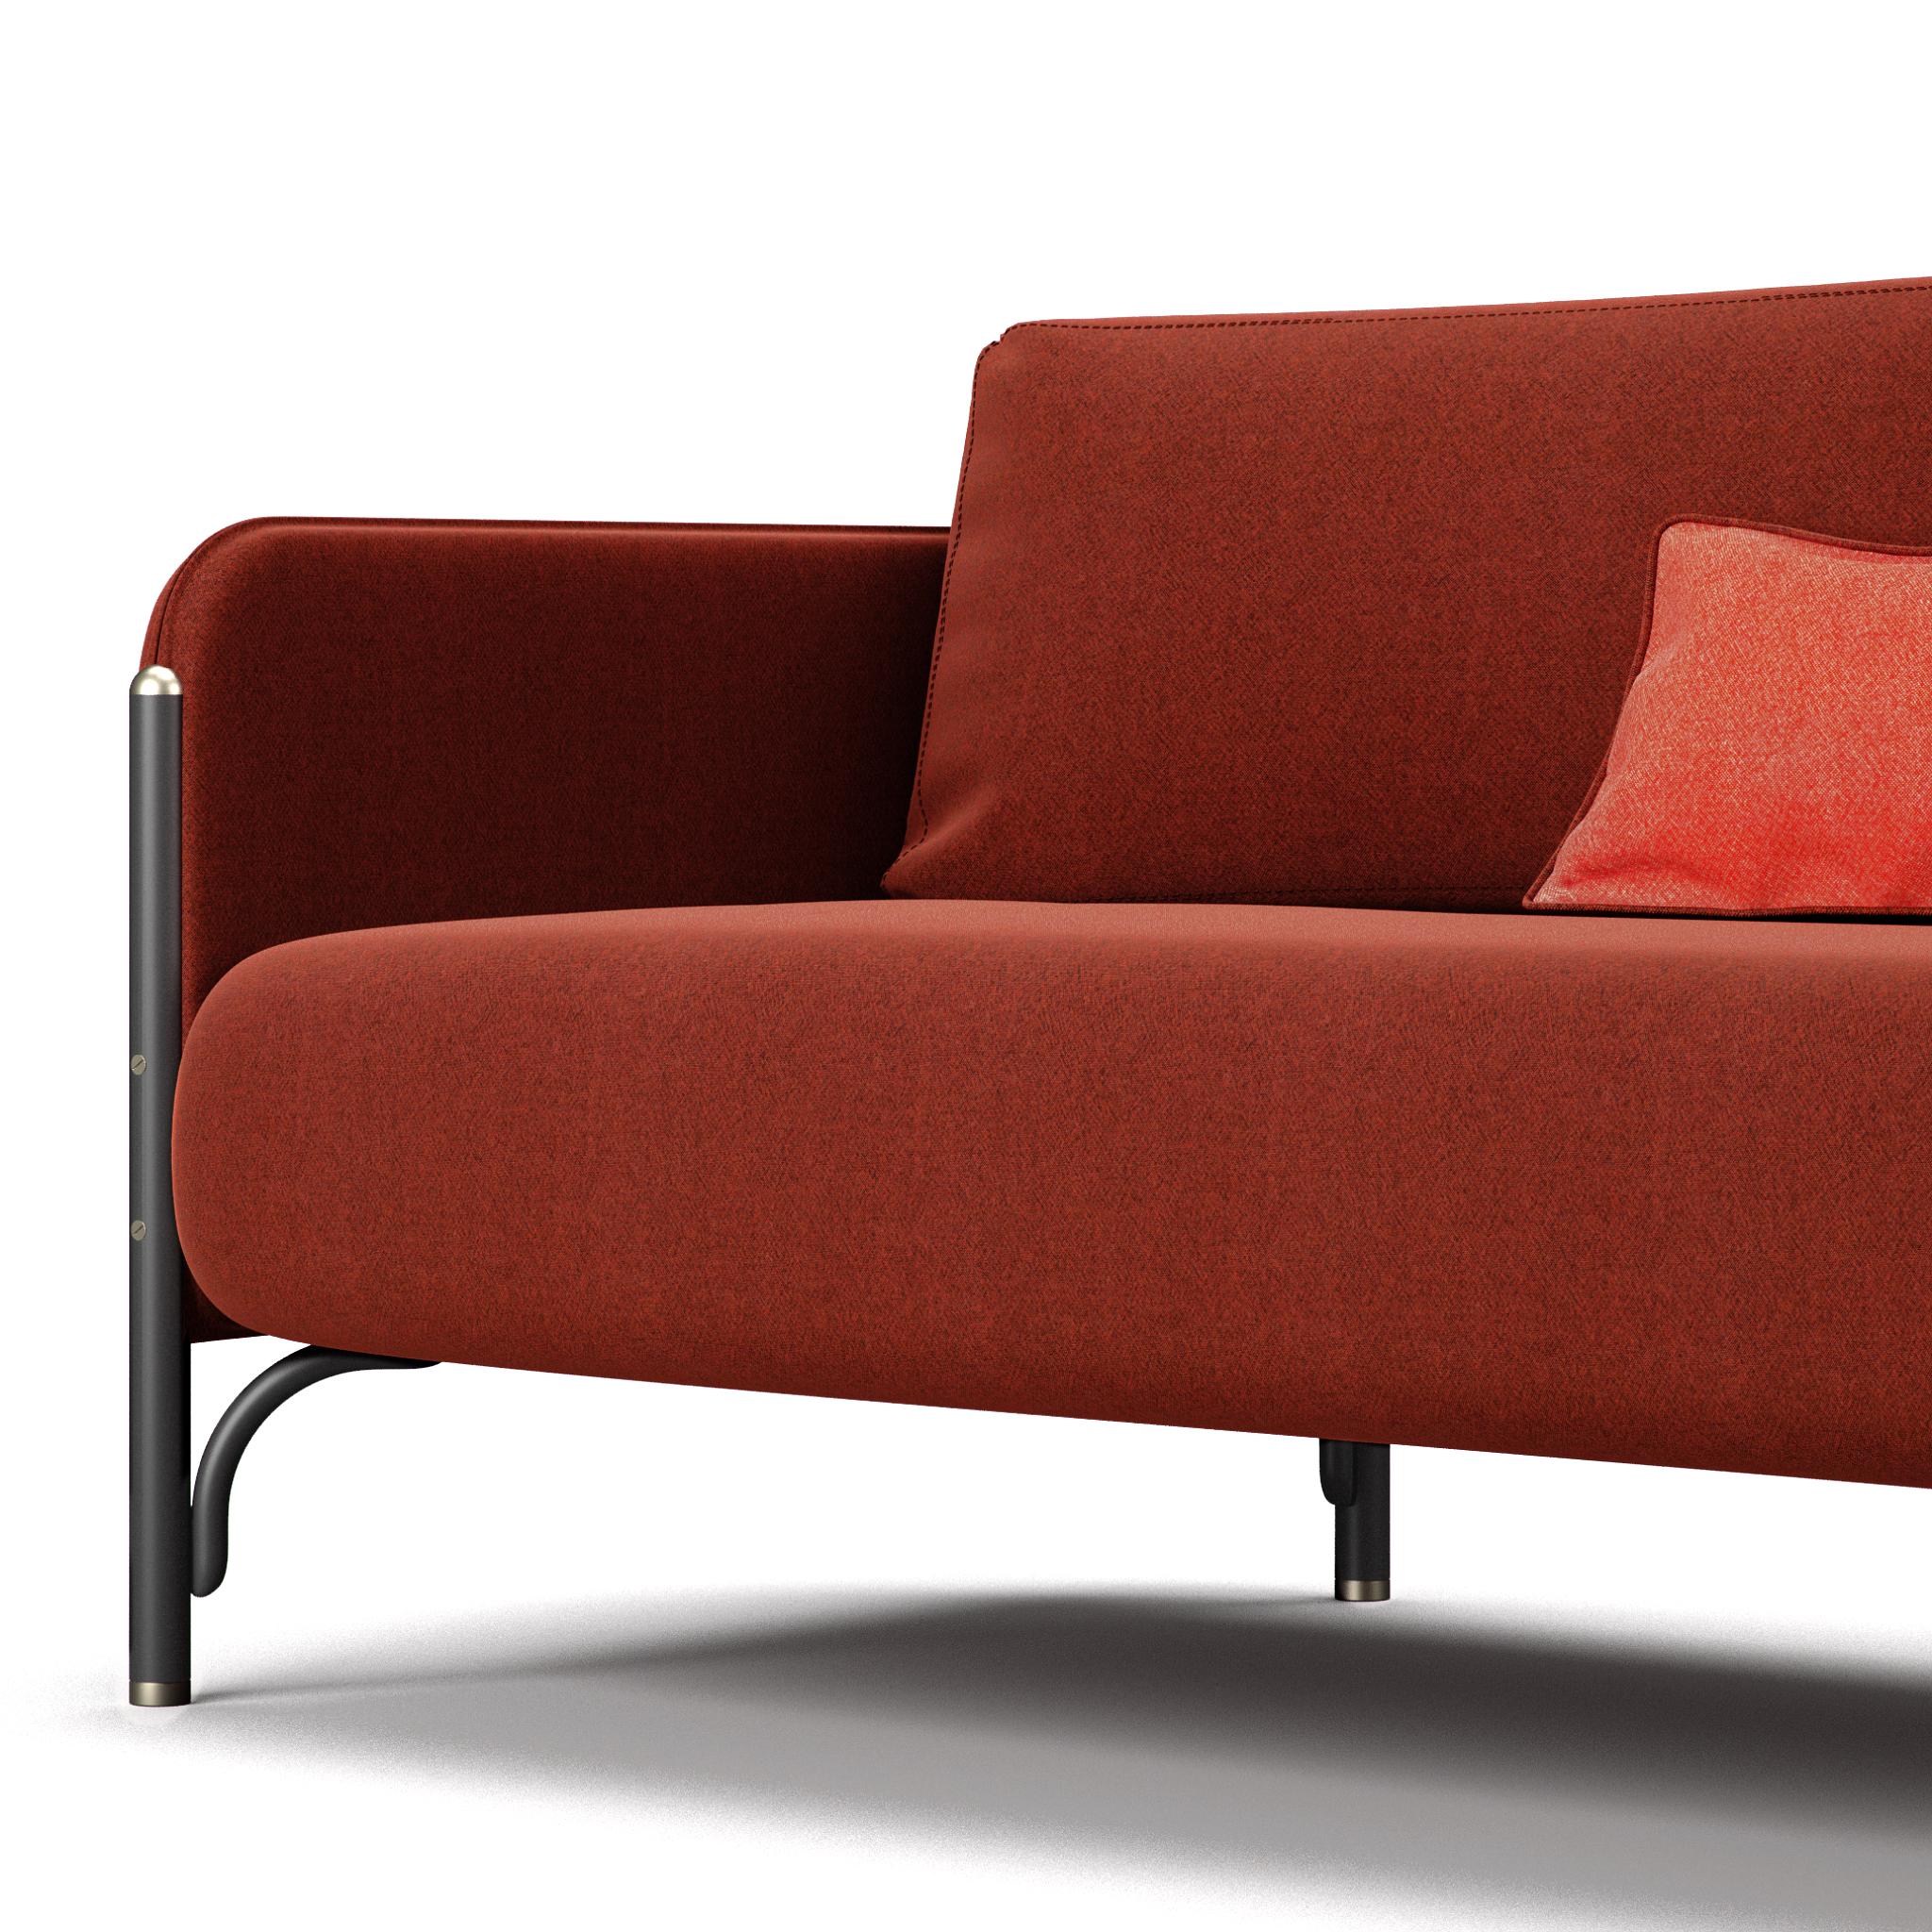 Dainelli Studio, das im Besitz des Kreativduos Leonardo und Marzia Dainelli steht, entwirft JANNIS, eine Polstermöbelkollektion, die sich hervorragend für den Auftragsgebrauch eignet.

Sofa und Loungesessel mit zwei- und dreisitzigen Sitzen, mit